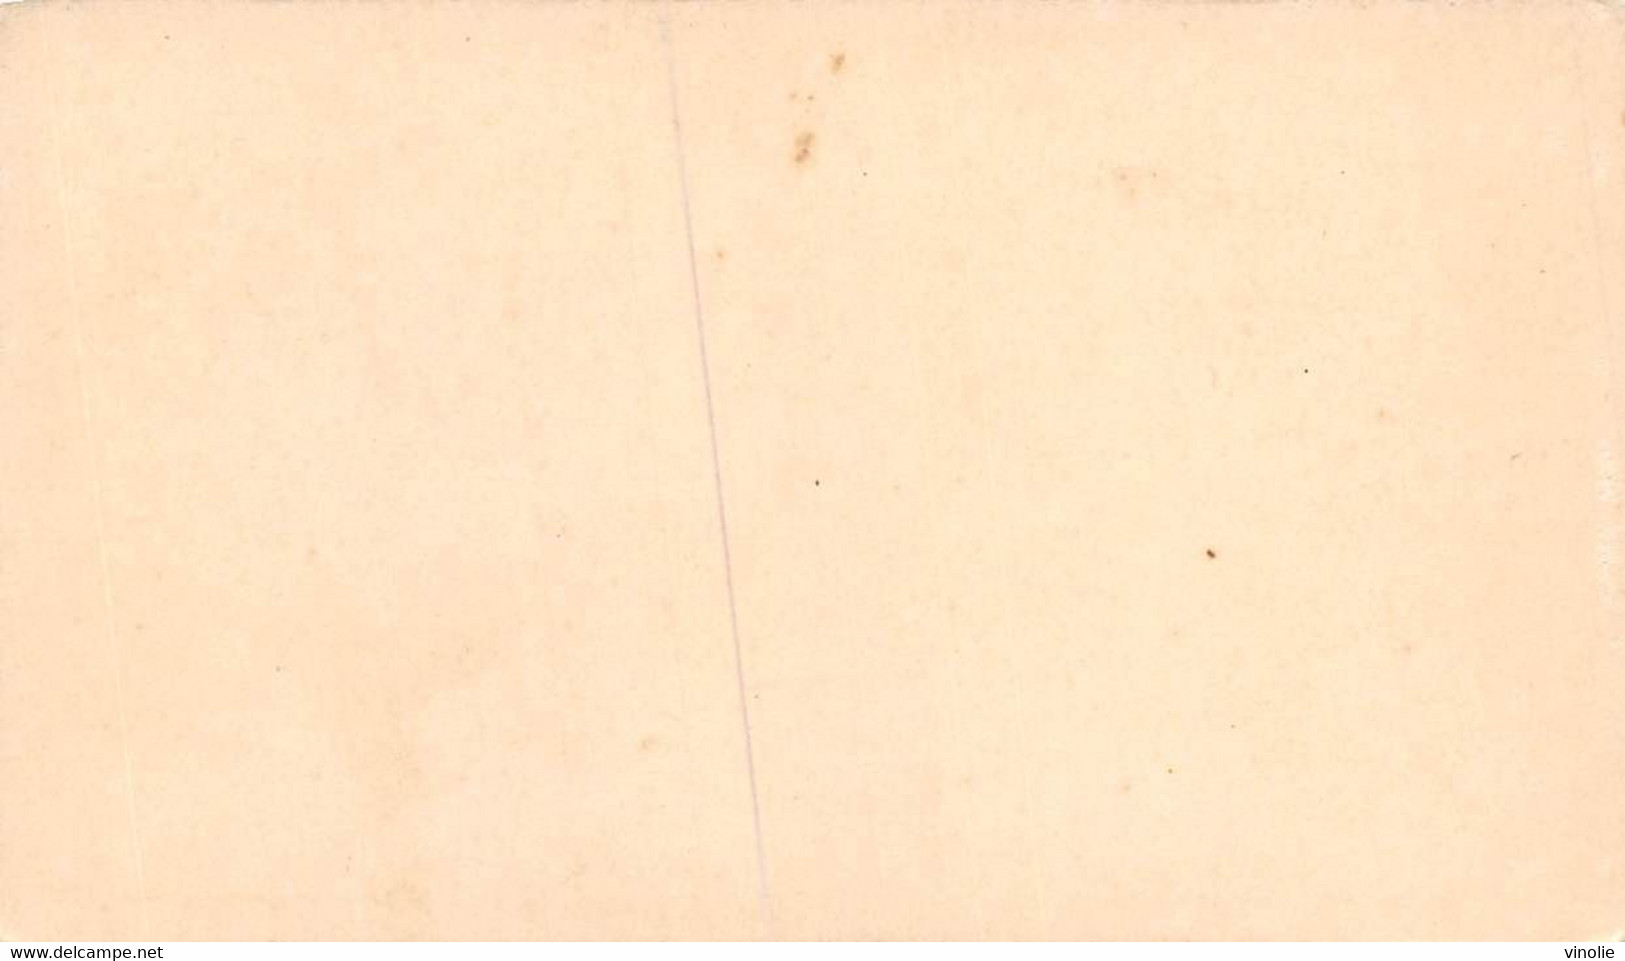 P.21-FO-1585 : IMAGE. CHROMOLITHOGRAPHIE. THEME MONNAIE. PIECE DE DEUX SOLS EN CUIVRE. 1792. CRIEUR DE JOURNAUX - Unclassified